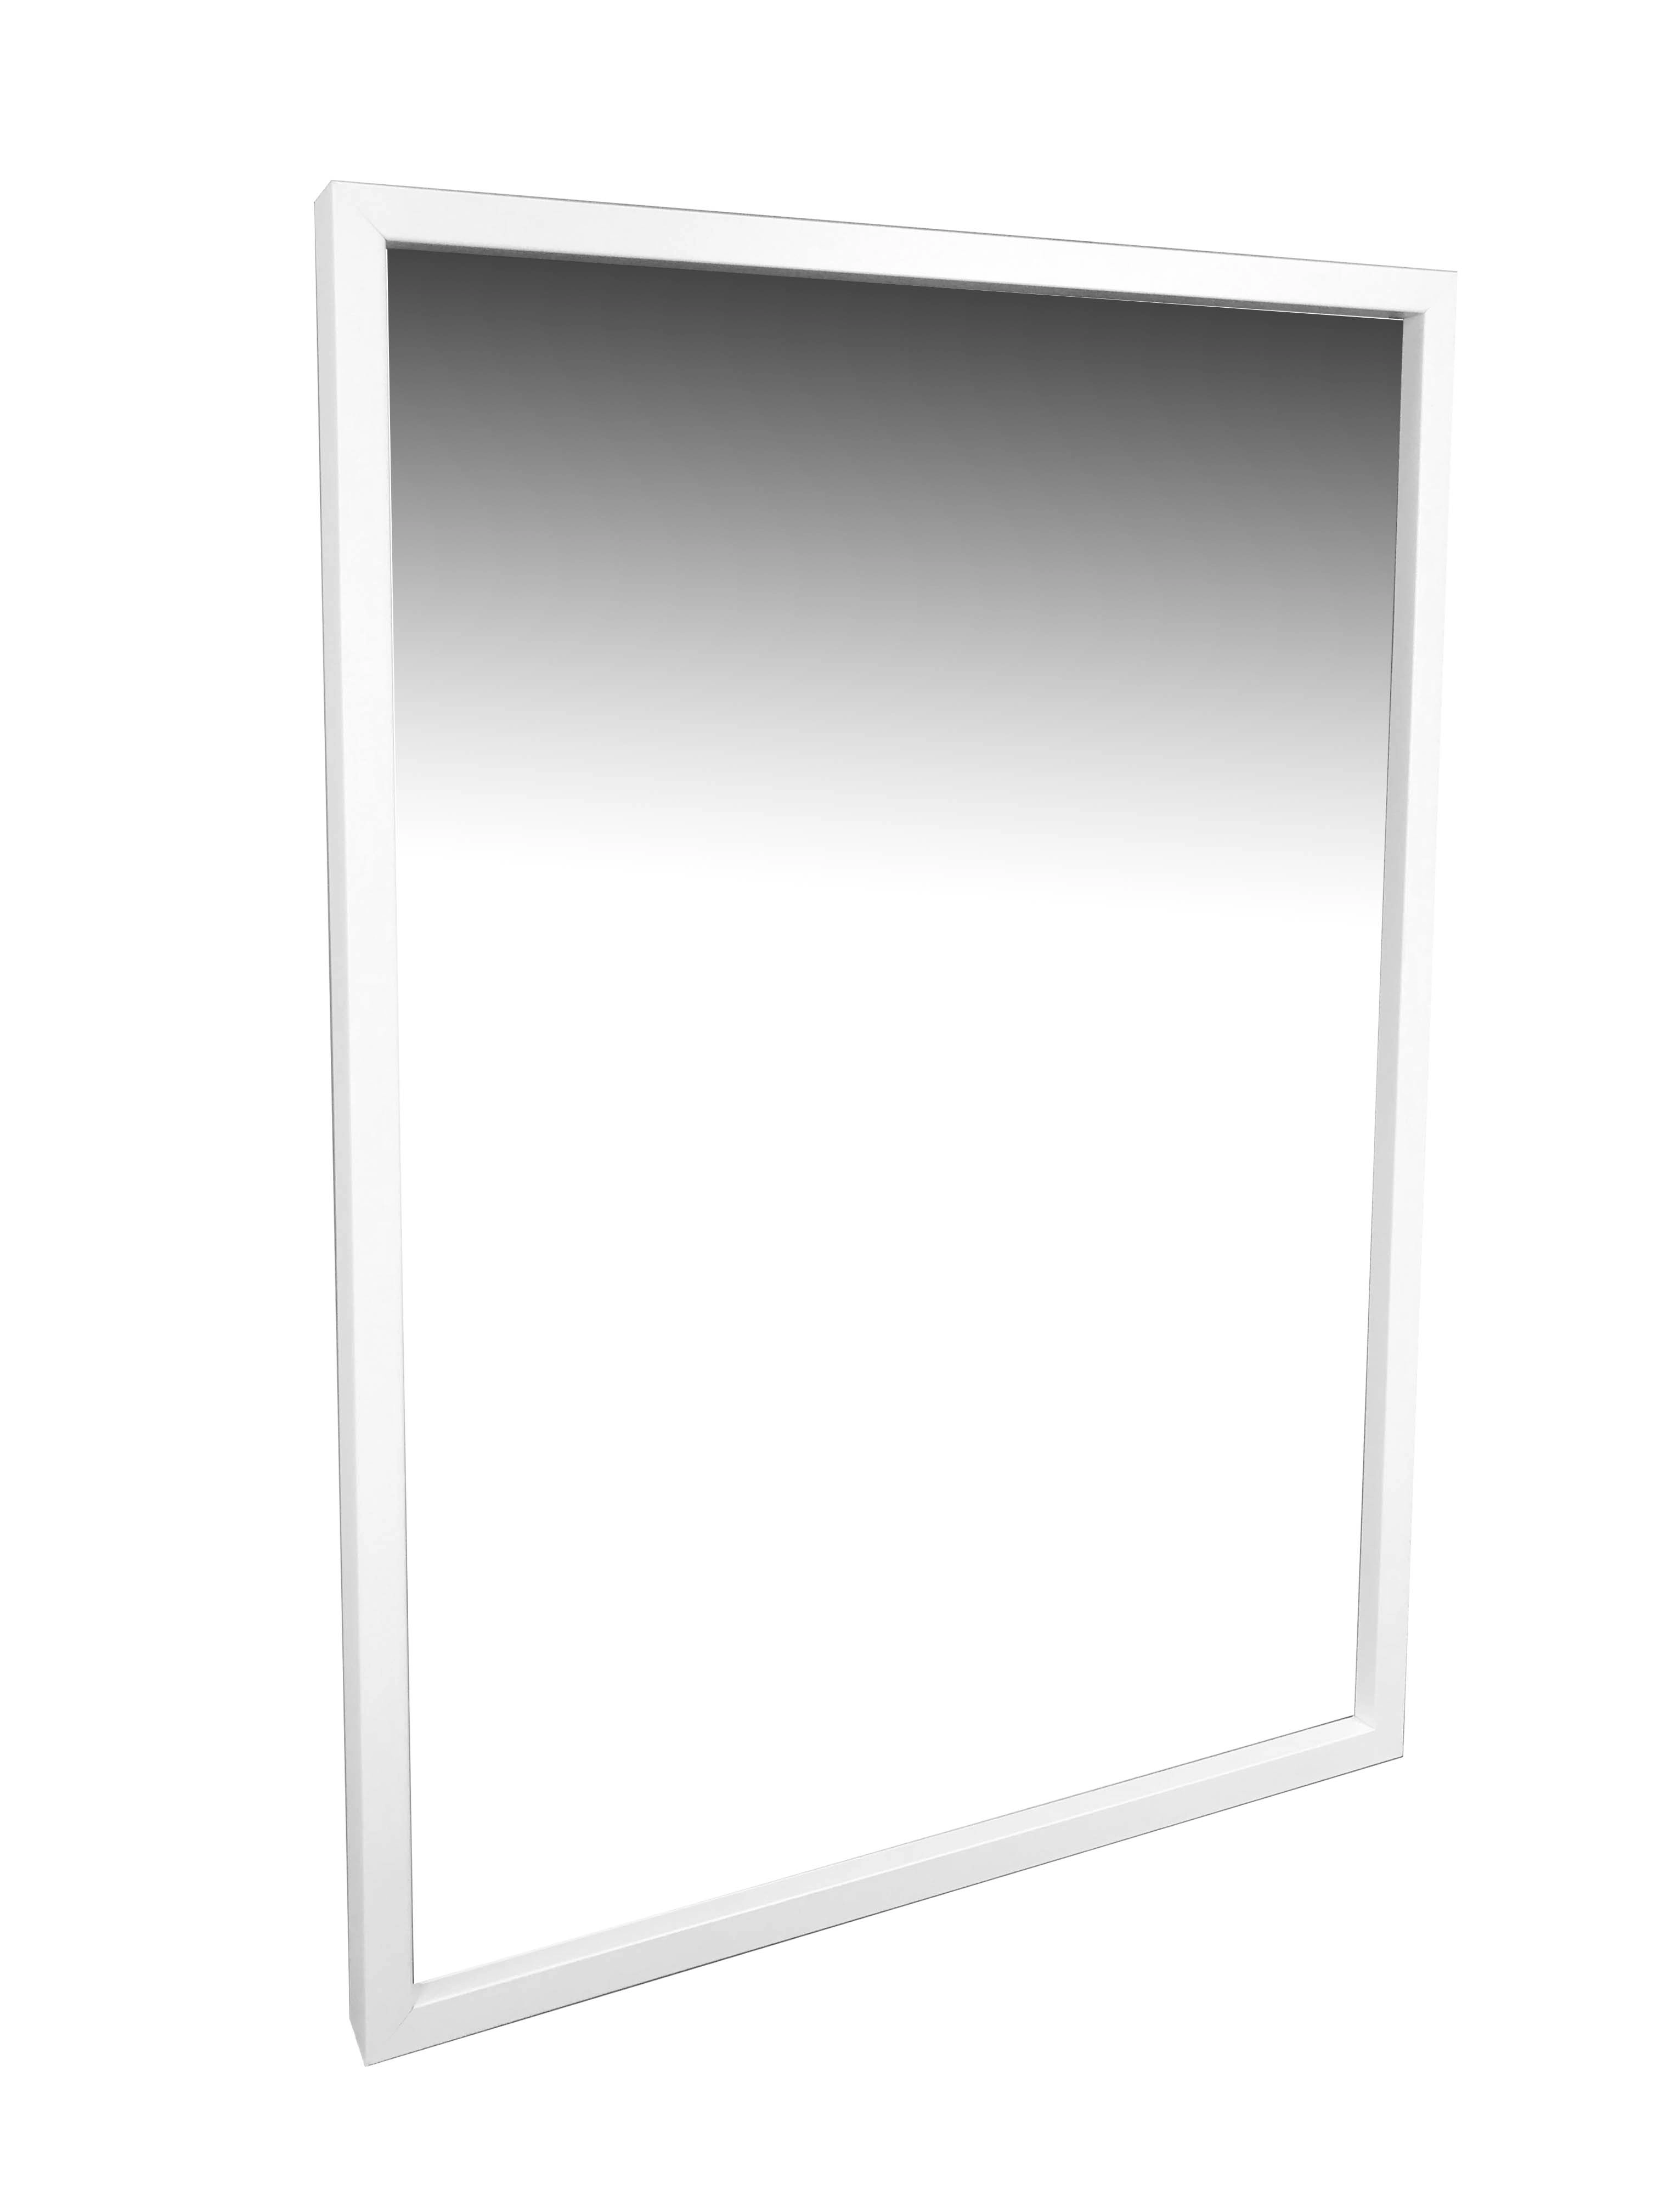 Specchiera box da parete con cornice finitura bianca 50x70 cm